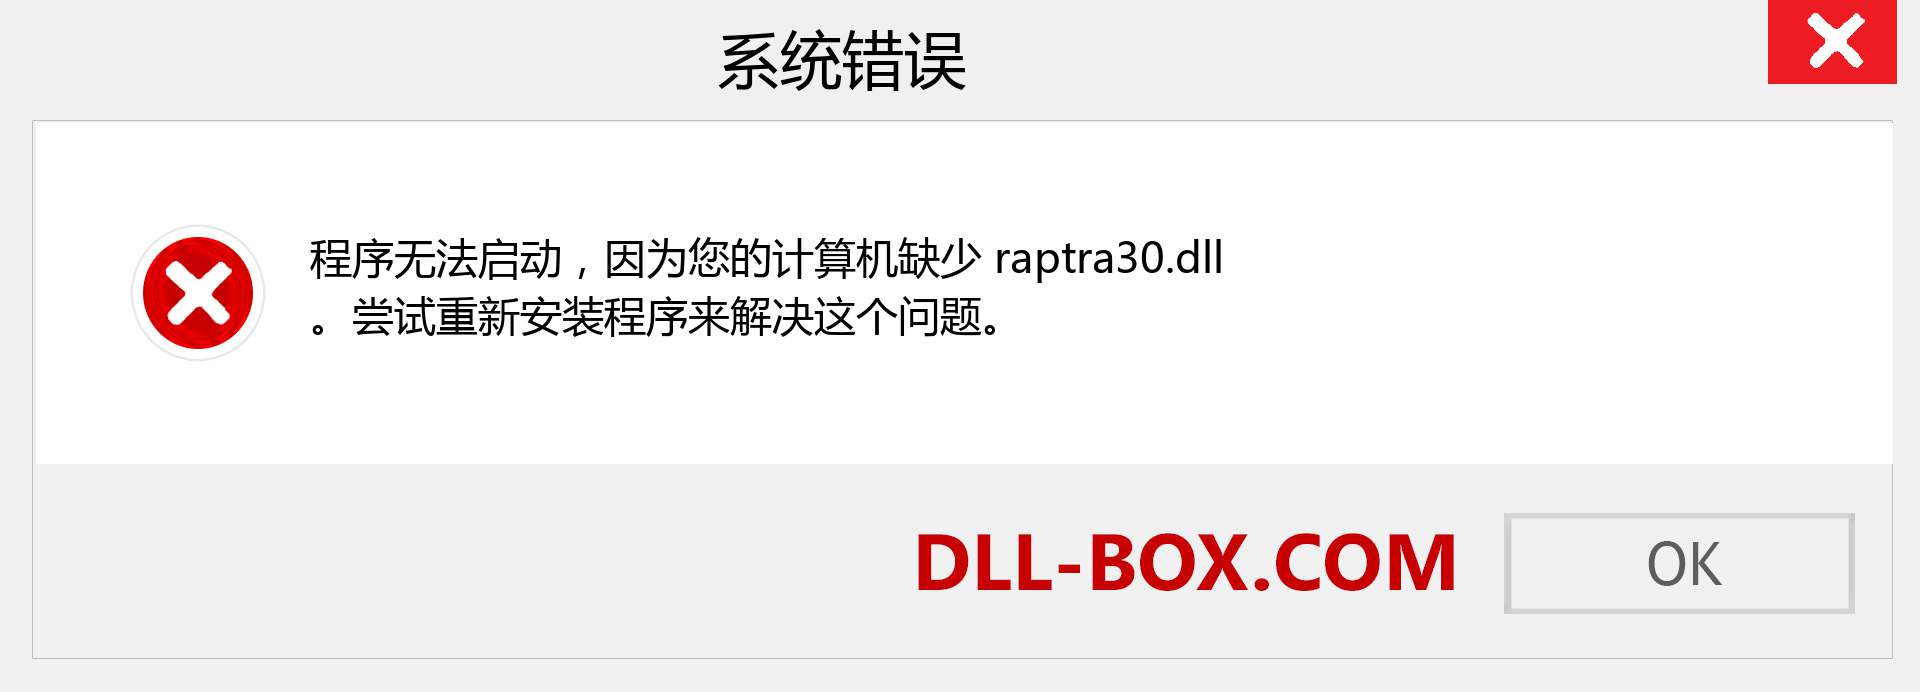 raptra30.dll 文件丢失？。 适用于 Windows 7、8、10 的下载 - 修复 Windows、照片、图像上的 raptra30 dll 丢失错误